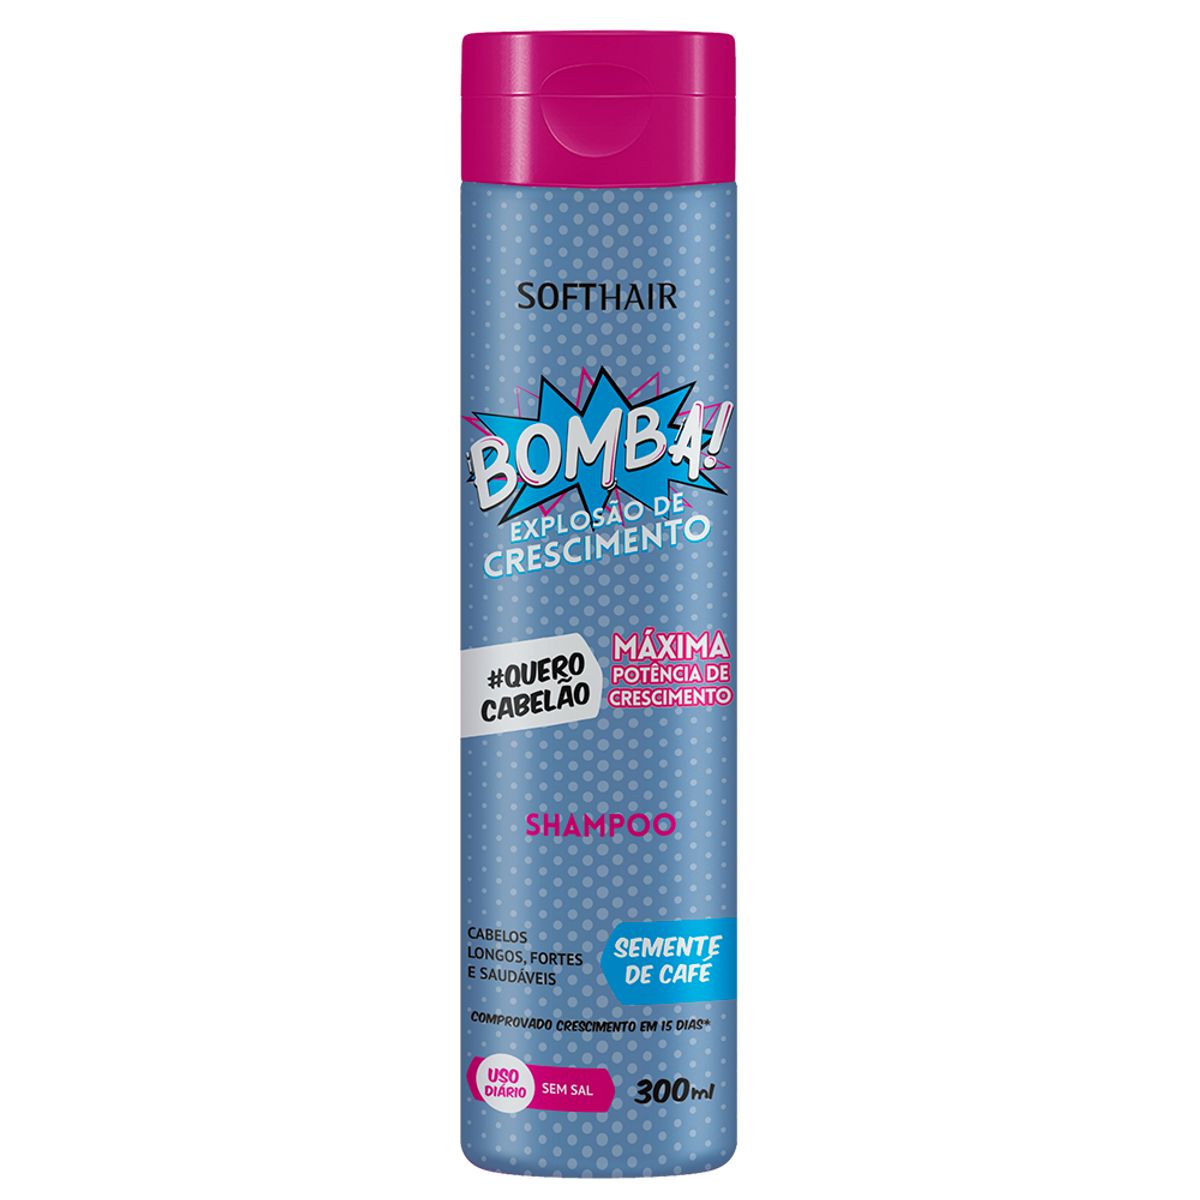 Shampoo Softhair Bomba Semente de Café 300ml